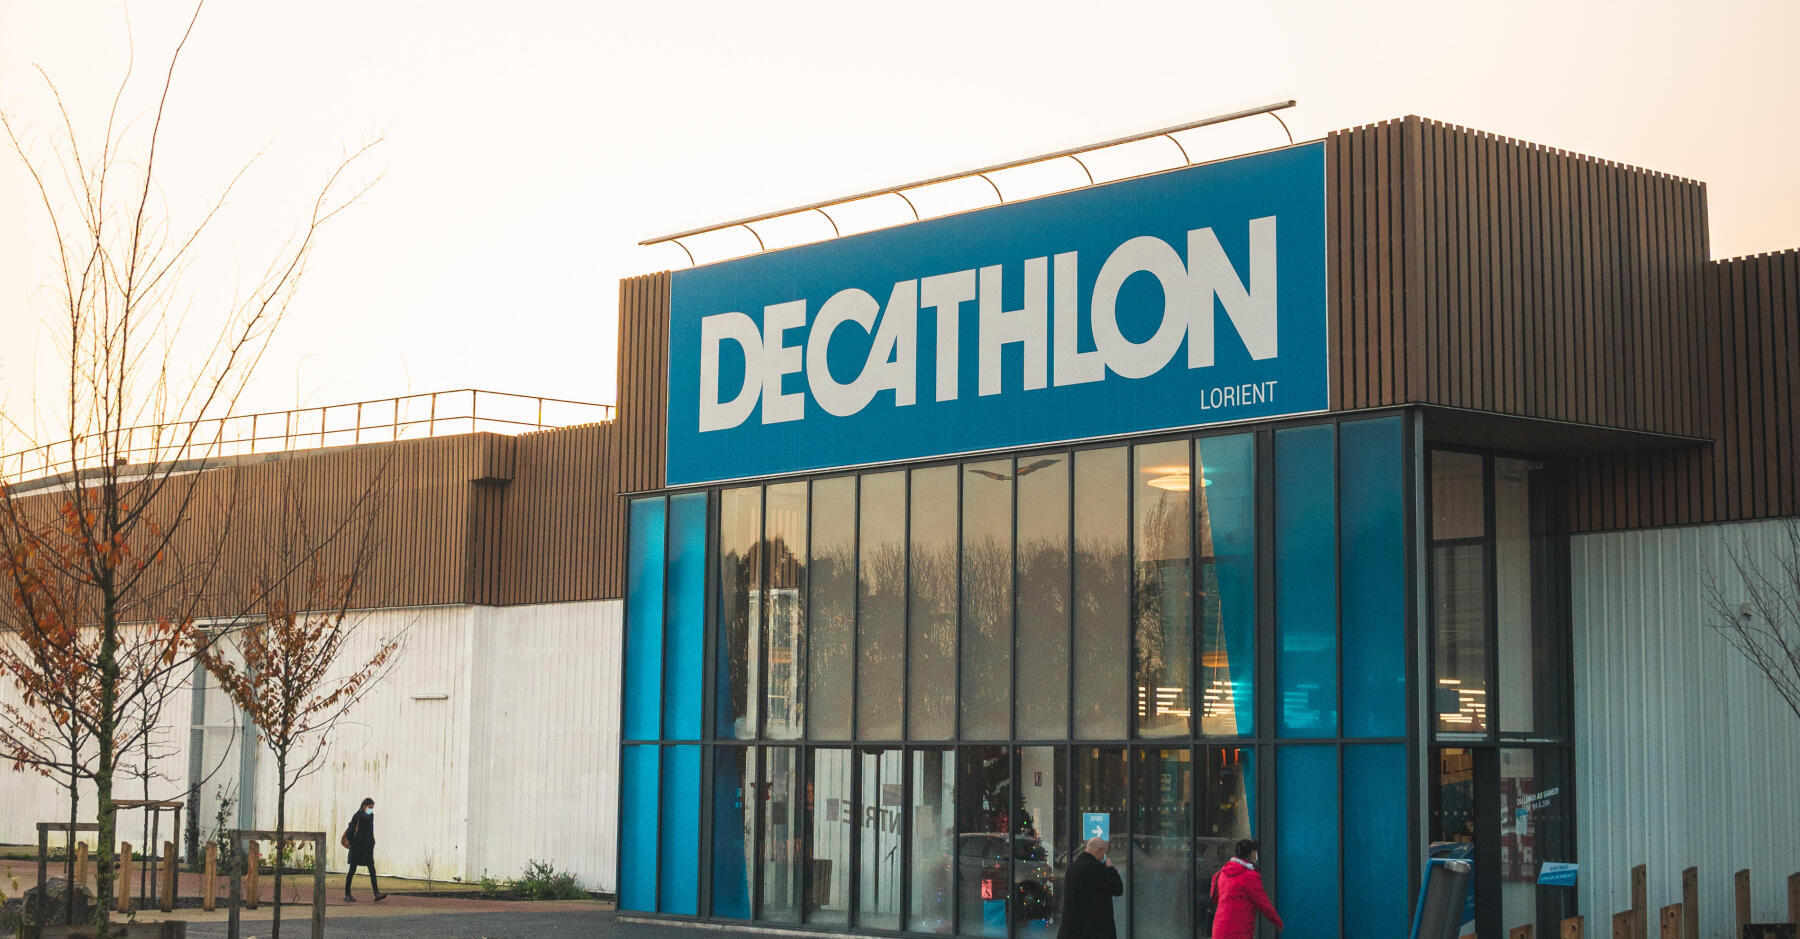 Picture Decathlon store Lorient city